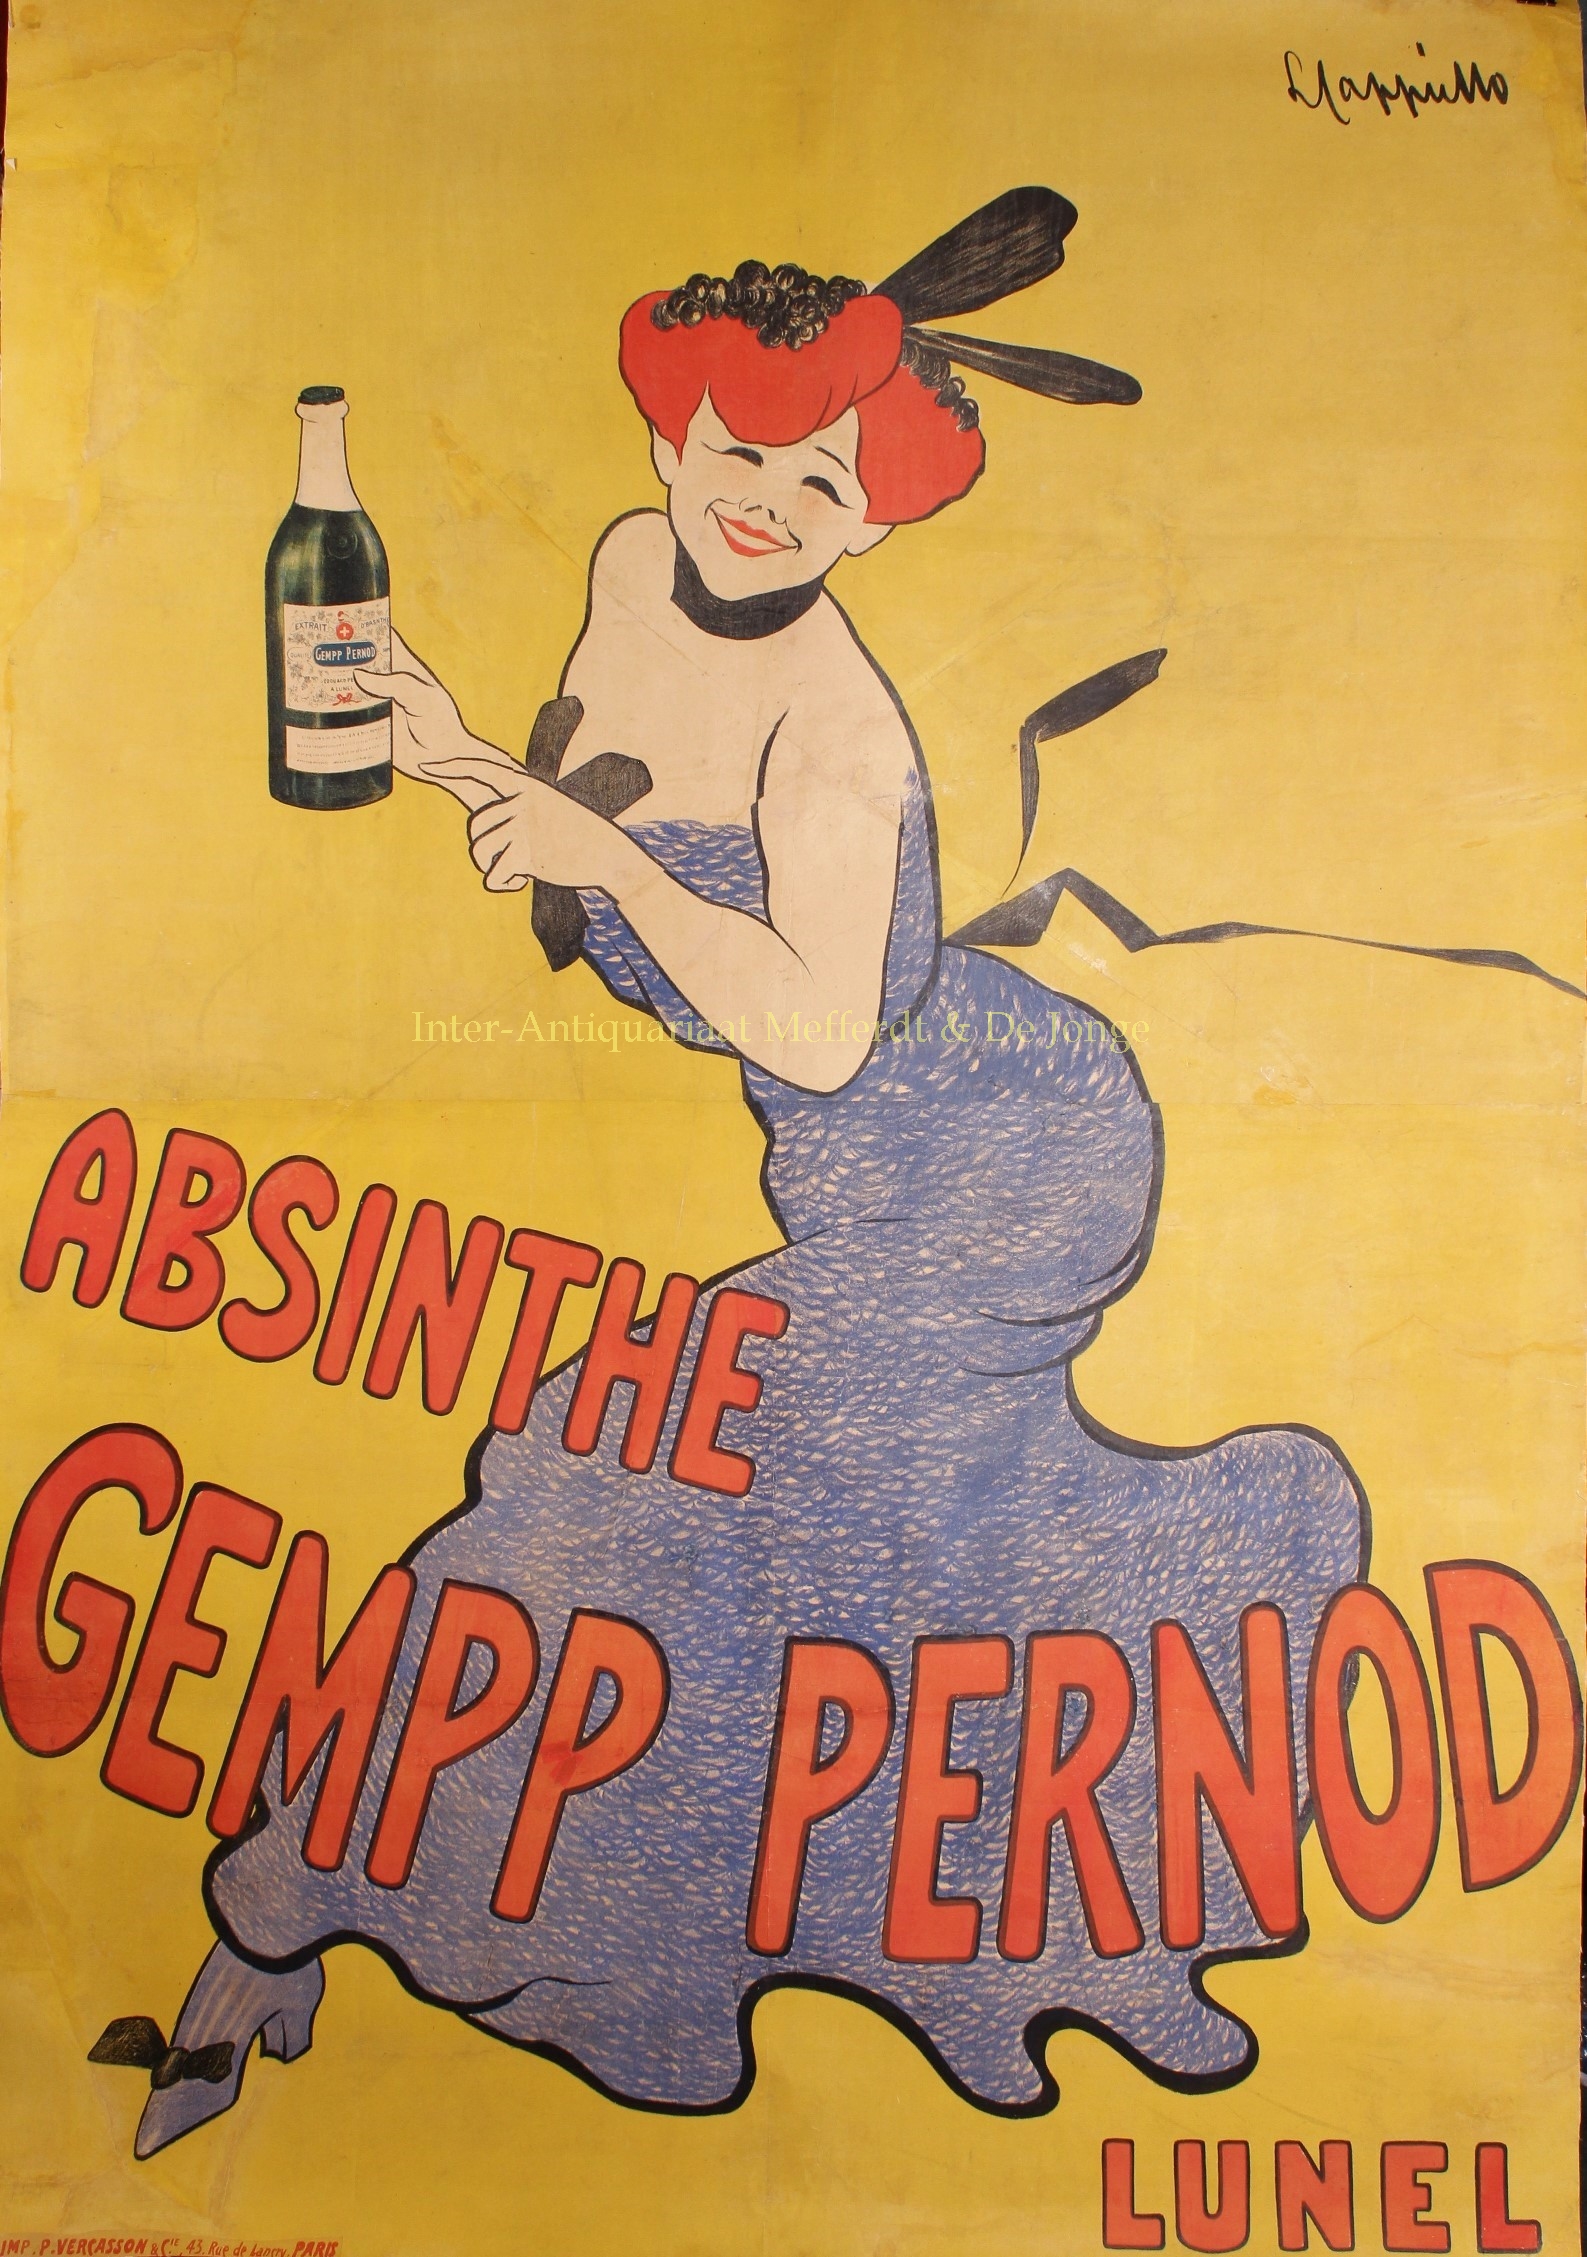 Cappiello-- Leonetto (1875-1942) - Absinthe Gempp Pernod - Leonetto Cappiello, c. 1908